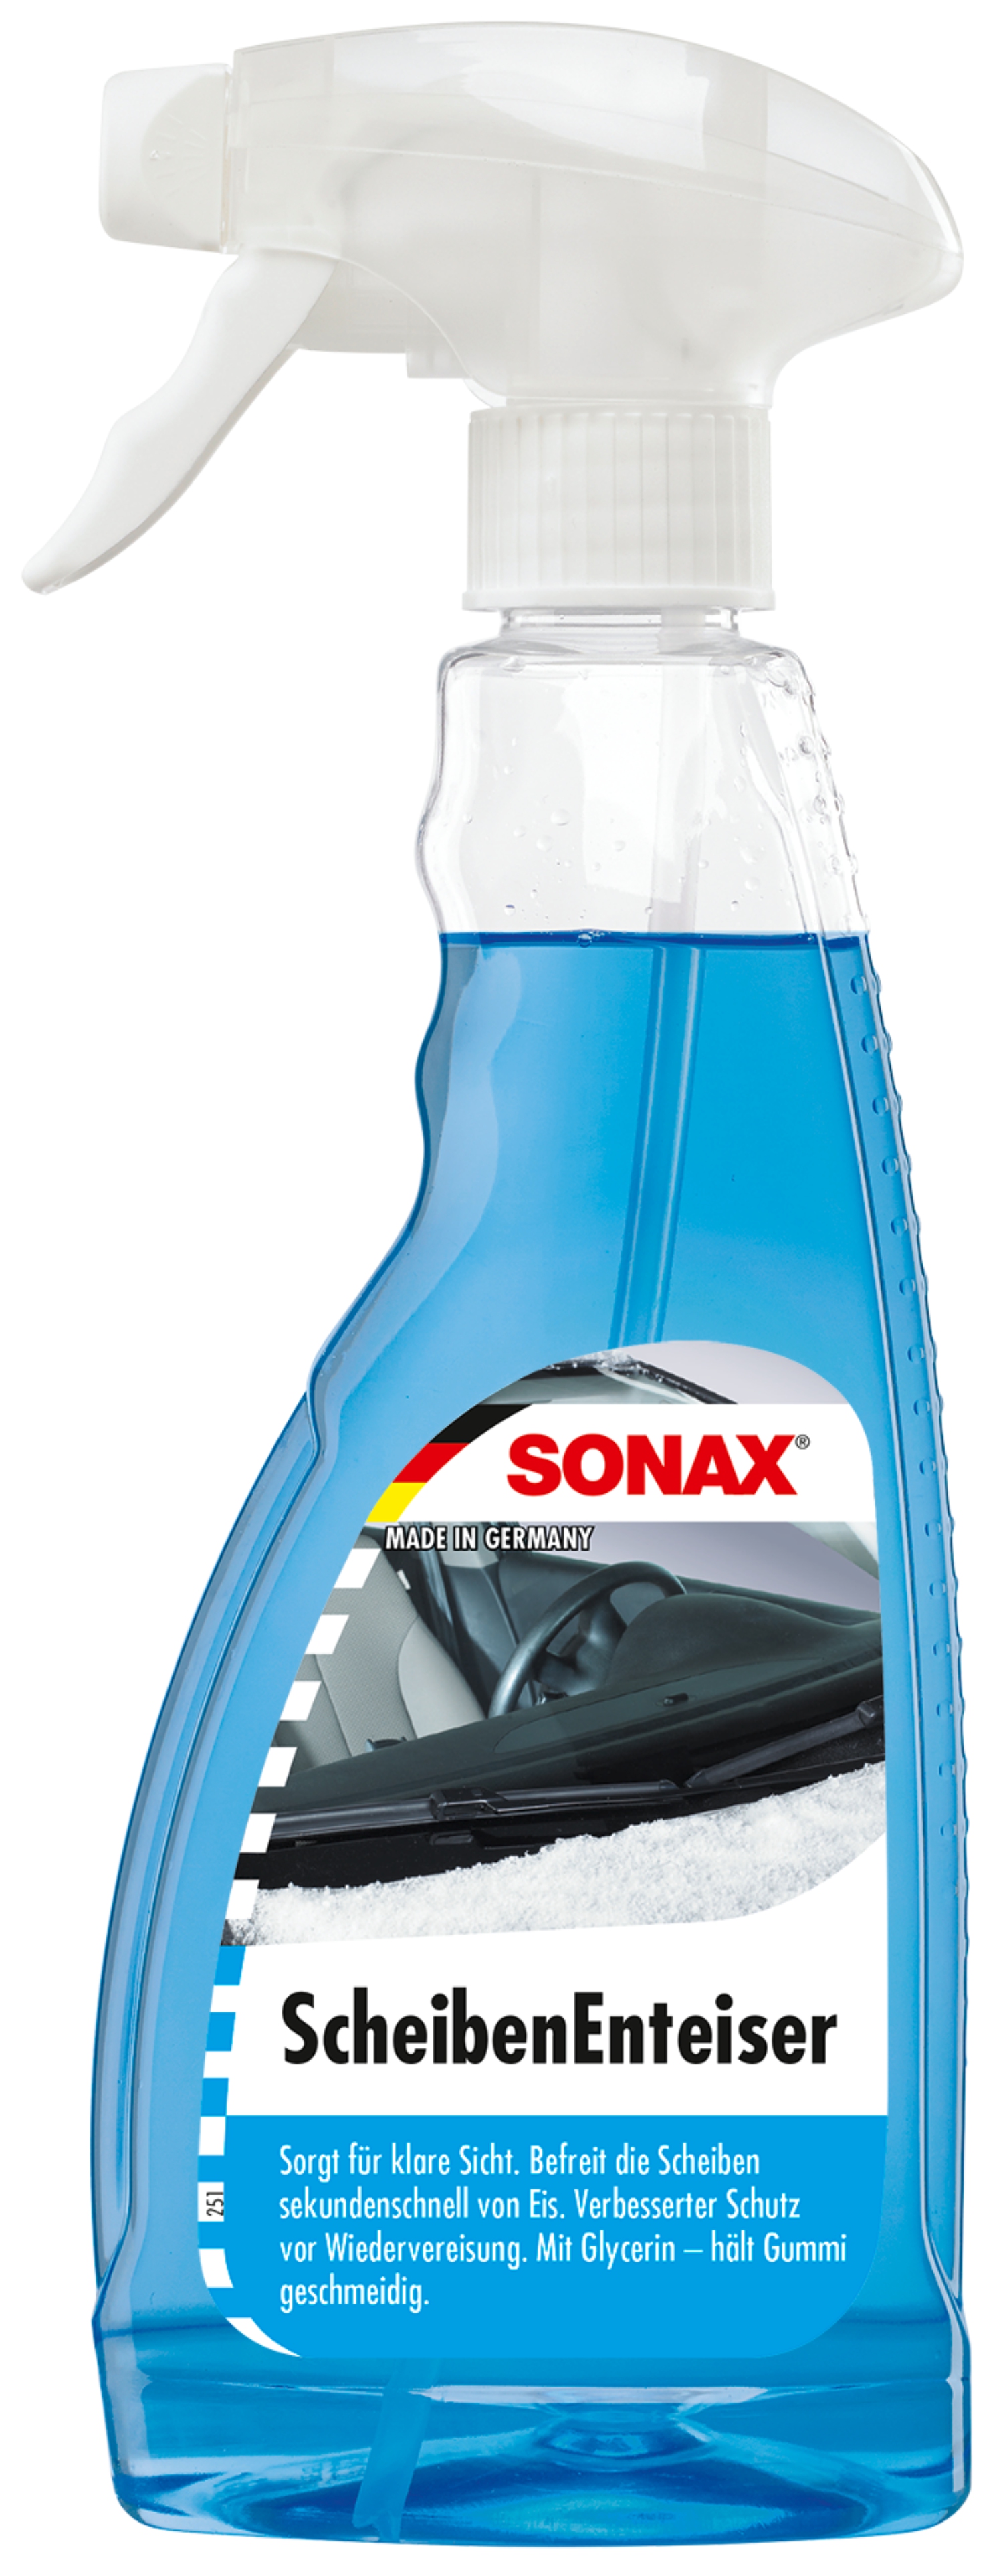 SONAX Scheibenenteiser 